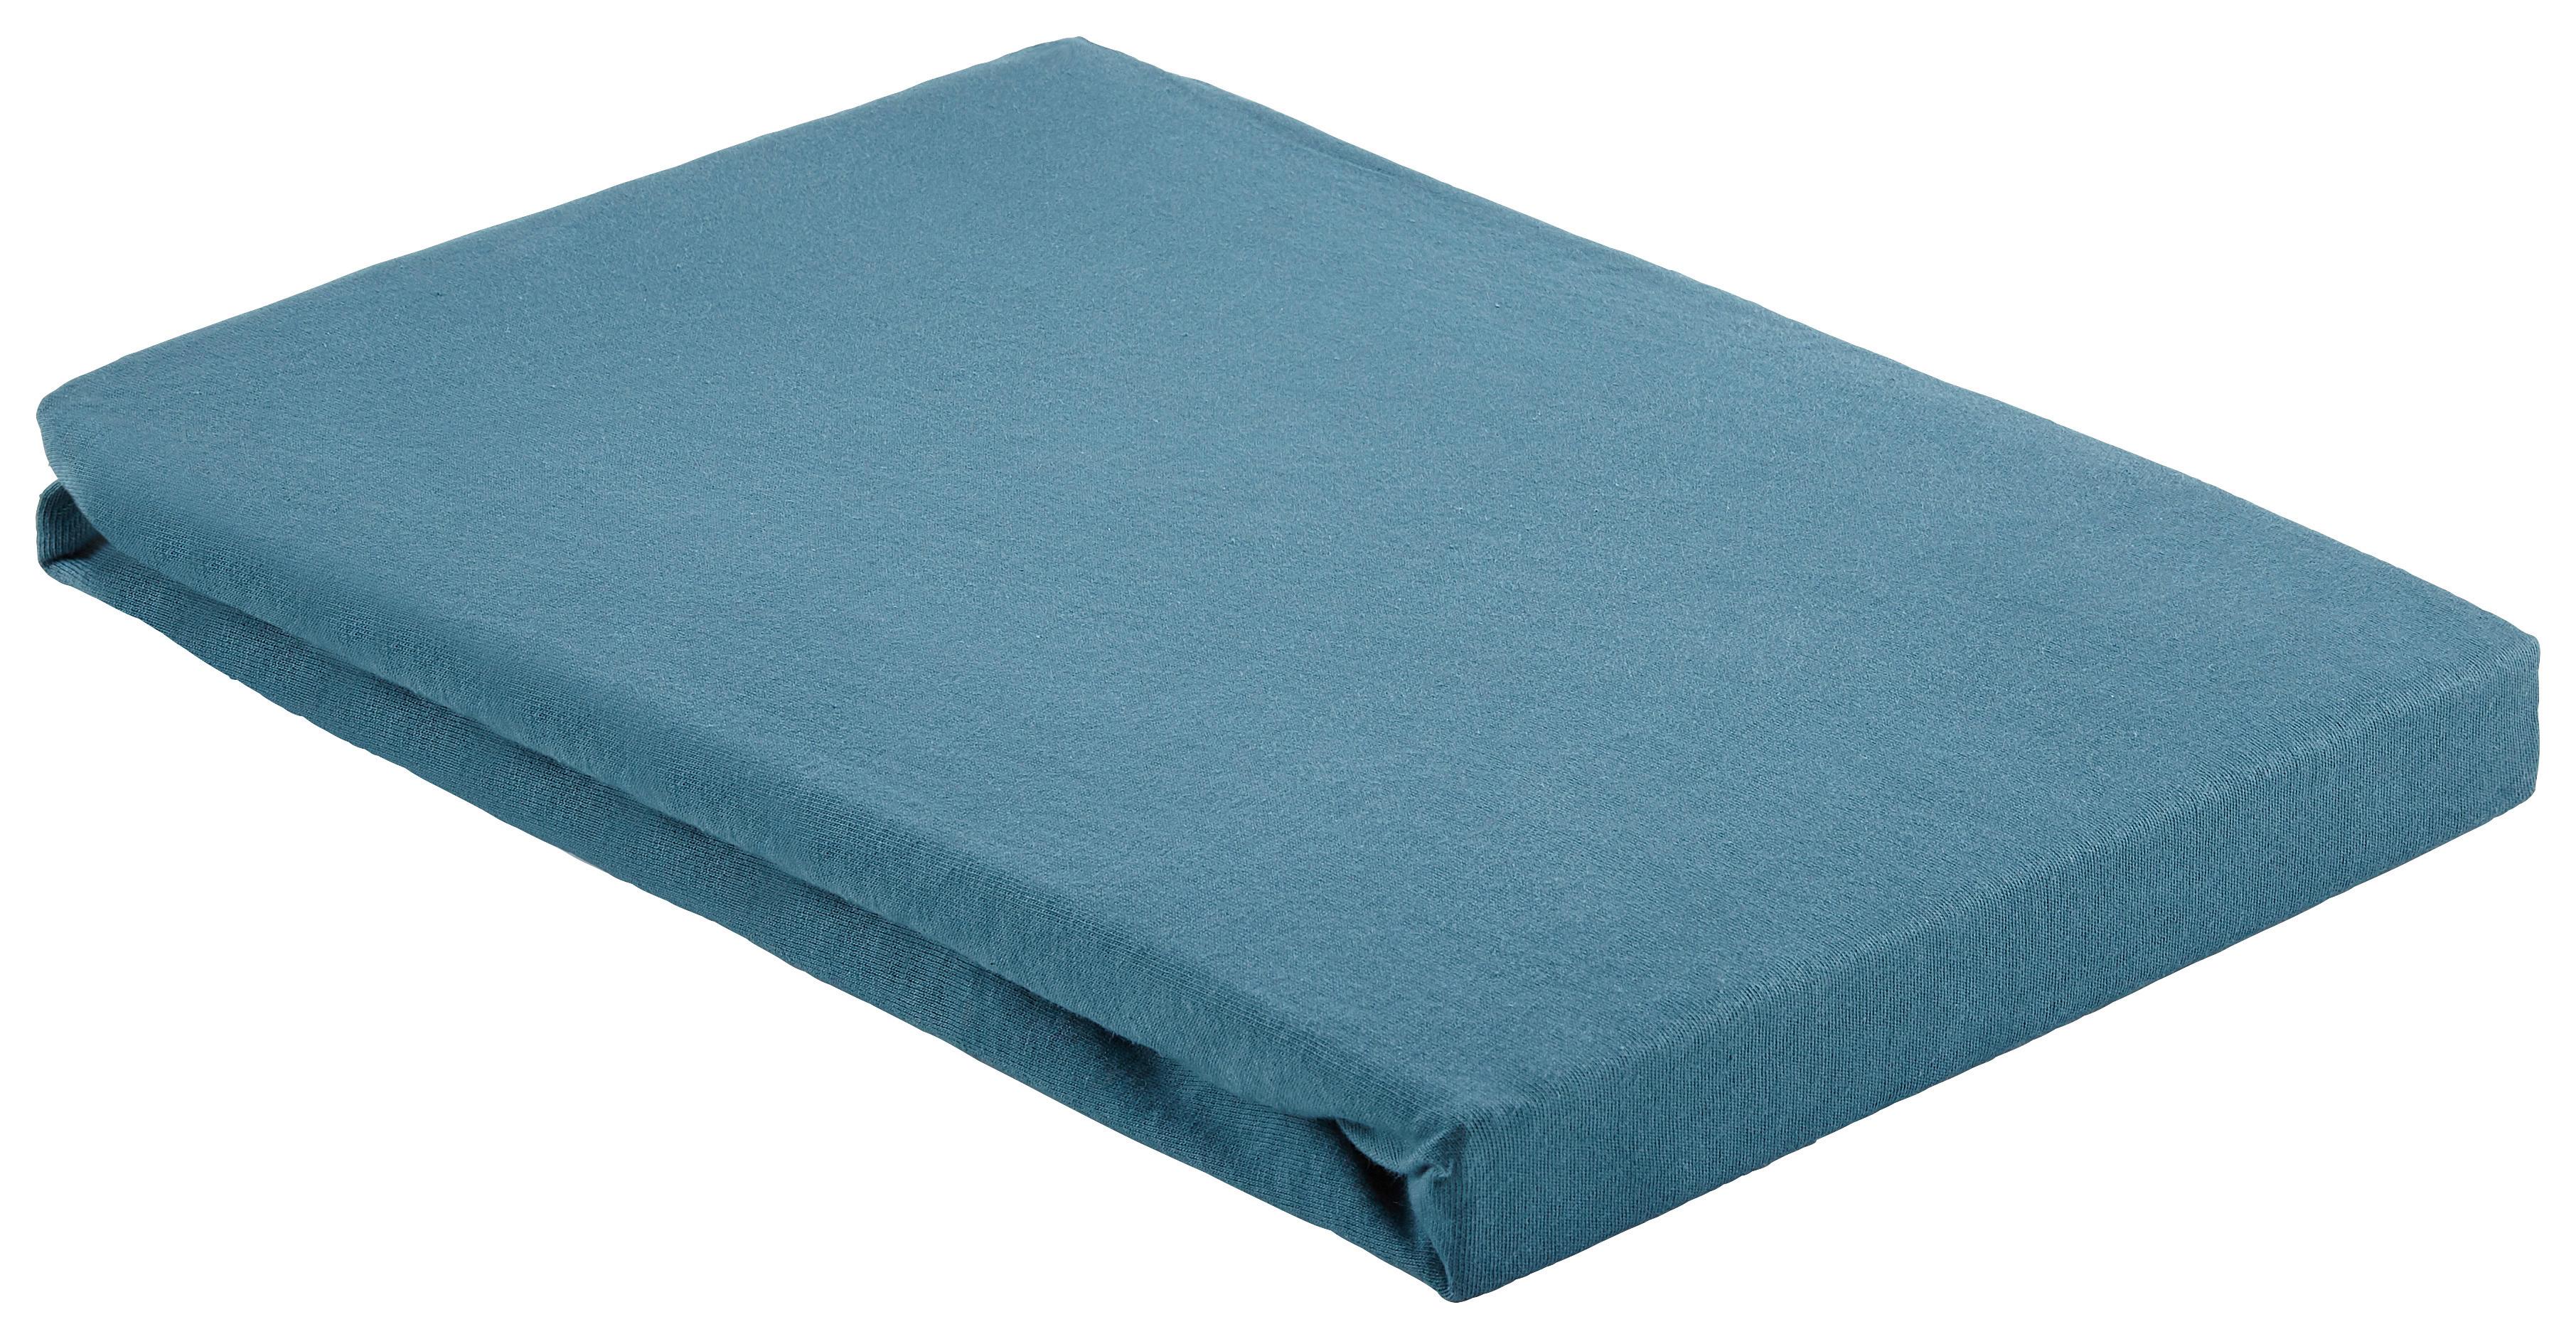 Elastické Prostěradlo Basic, 100/200 Cm - tmavě modrá, textil (100/200cm) - Modern Living